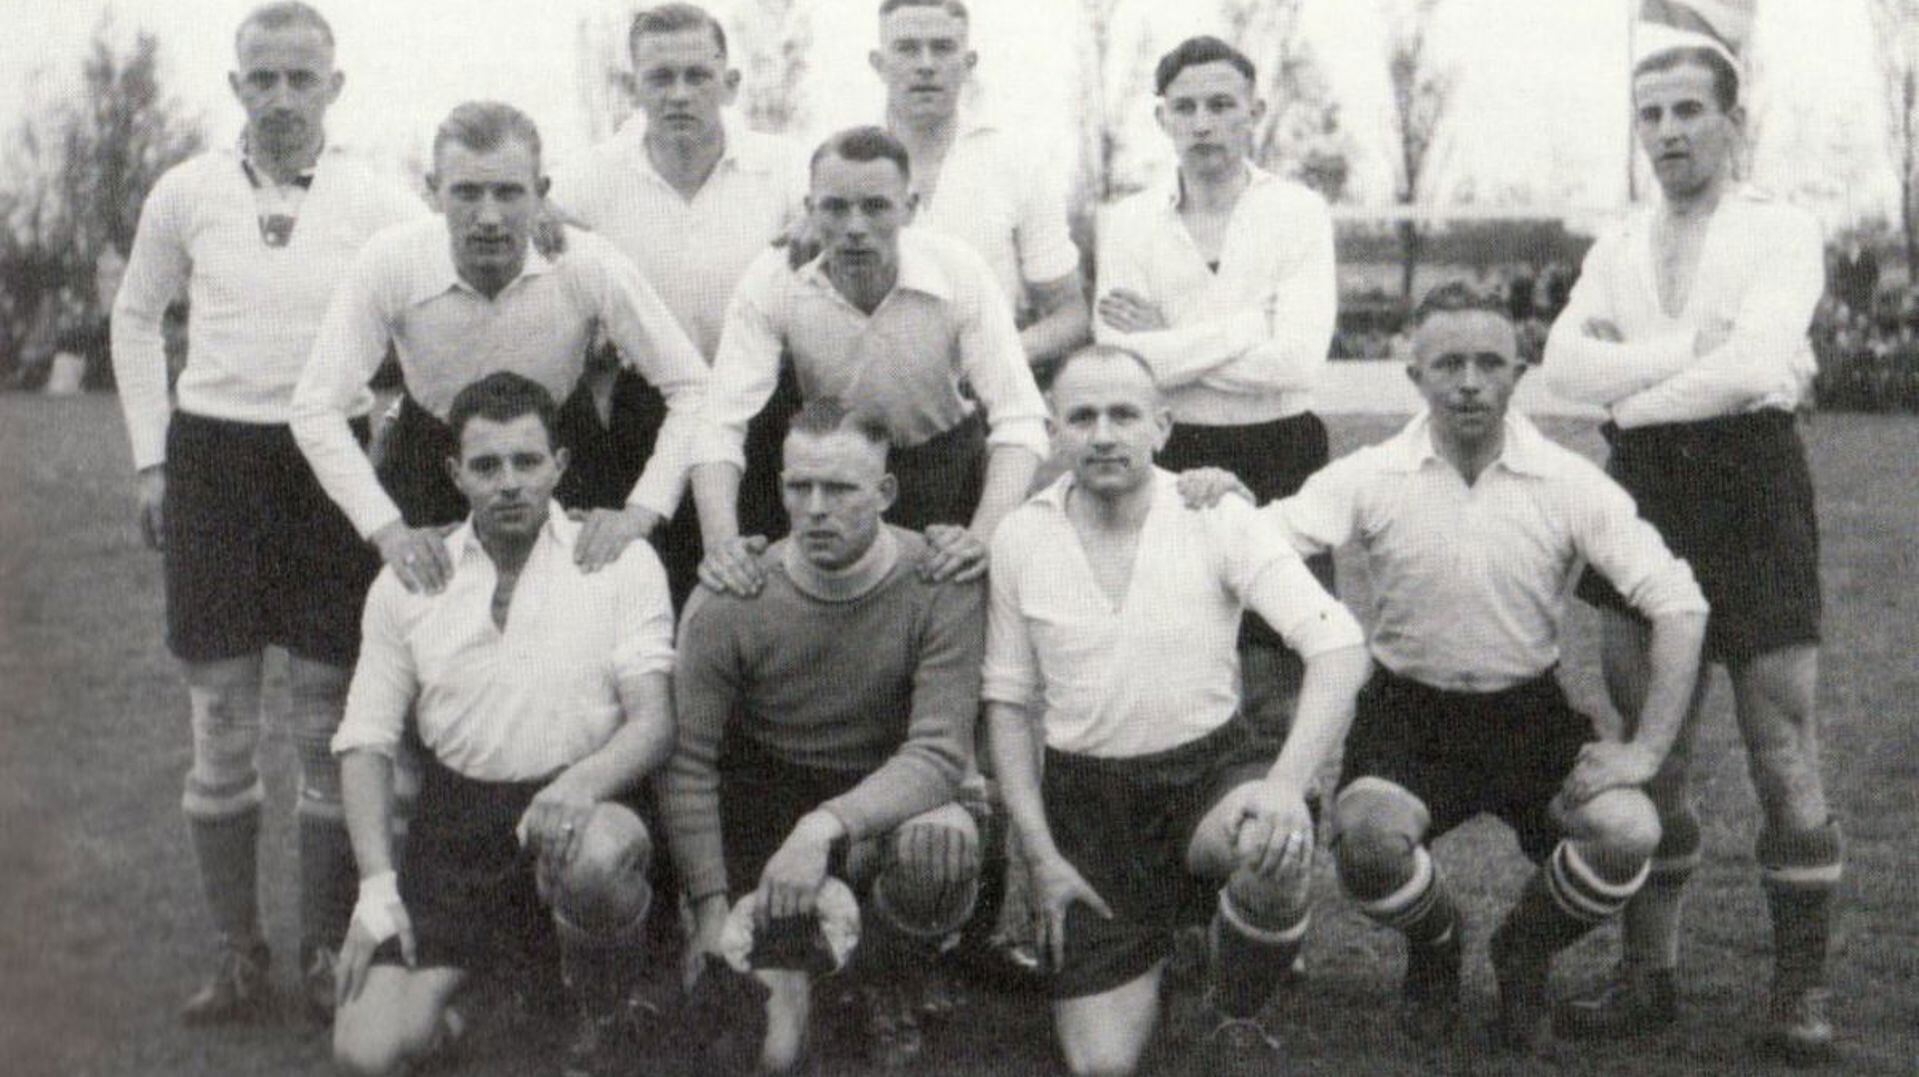 Het noordelijk elftal op 21 mei 1944 met Abe Lenstra, staande tweede van rechts